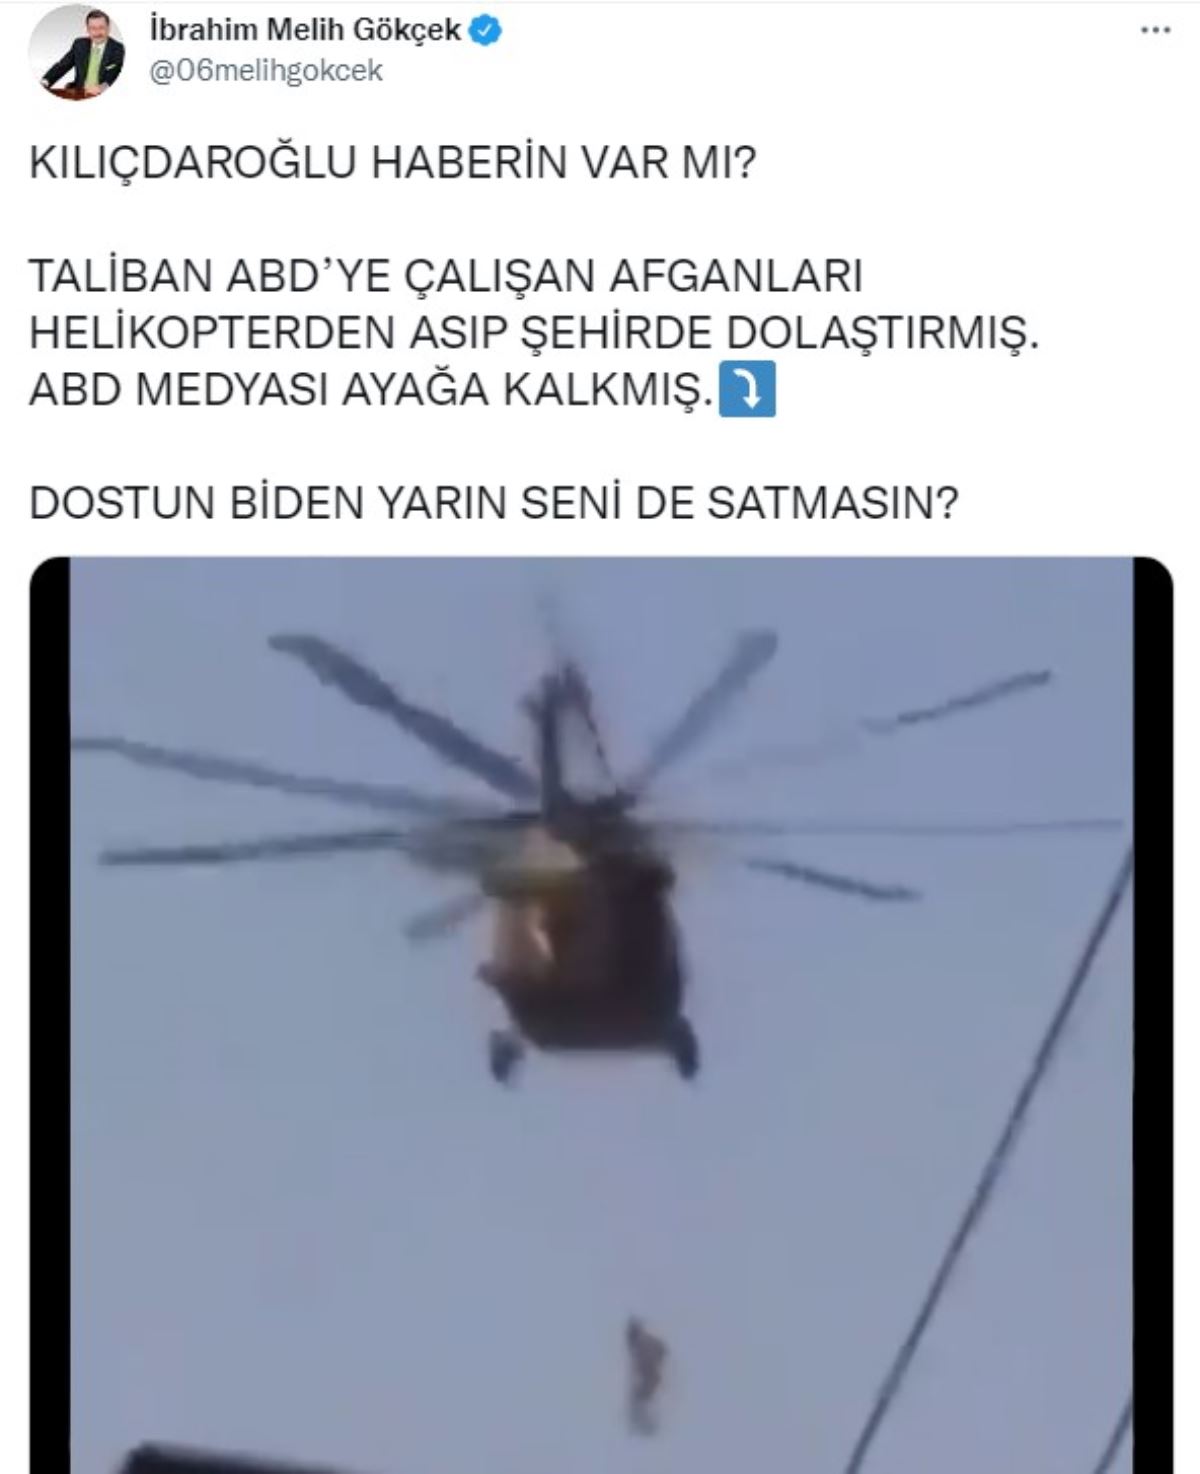 Taliban videosu paylaşan Gökçek, Kılıçdaroğlu'nu hedef aldı